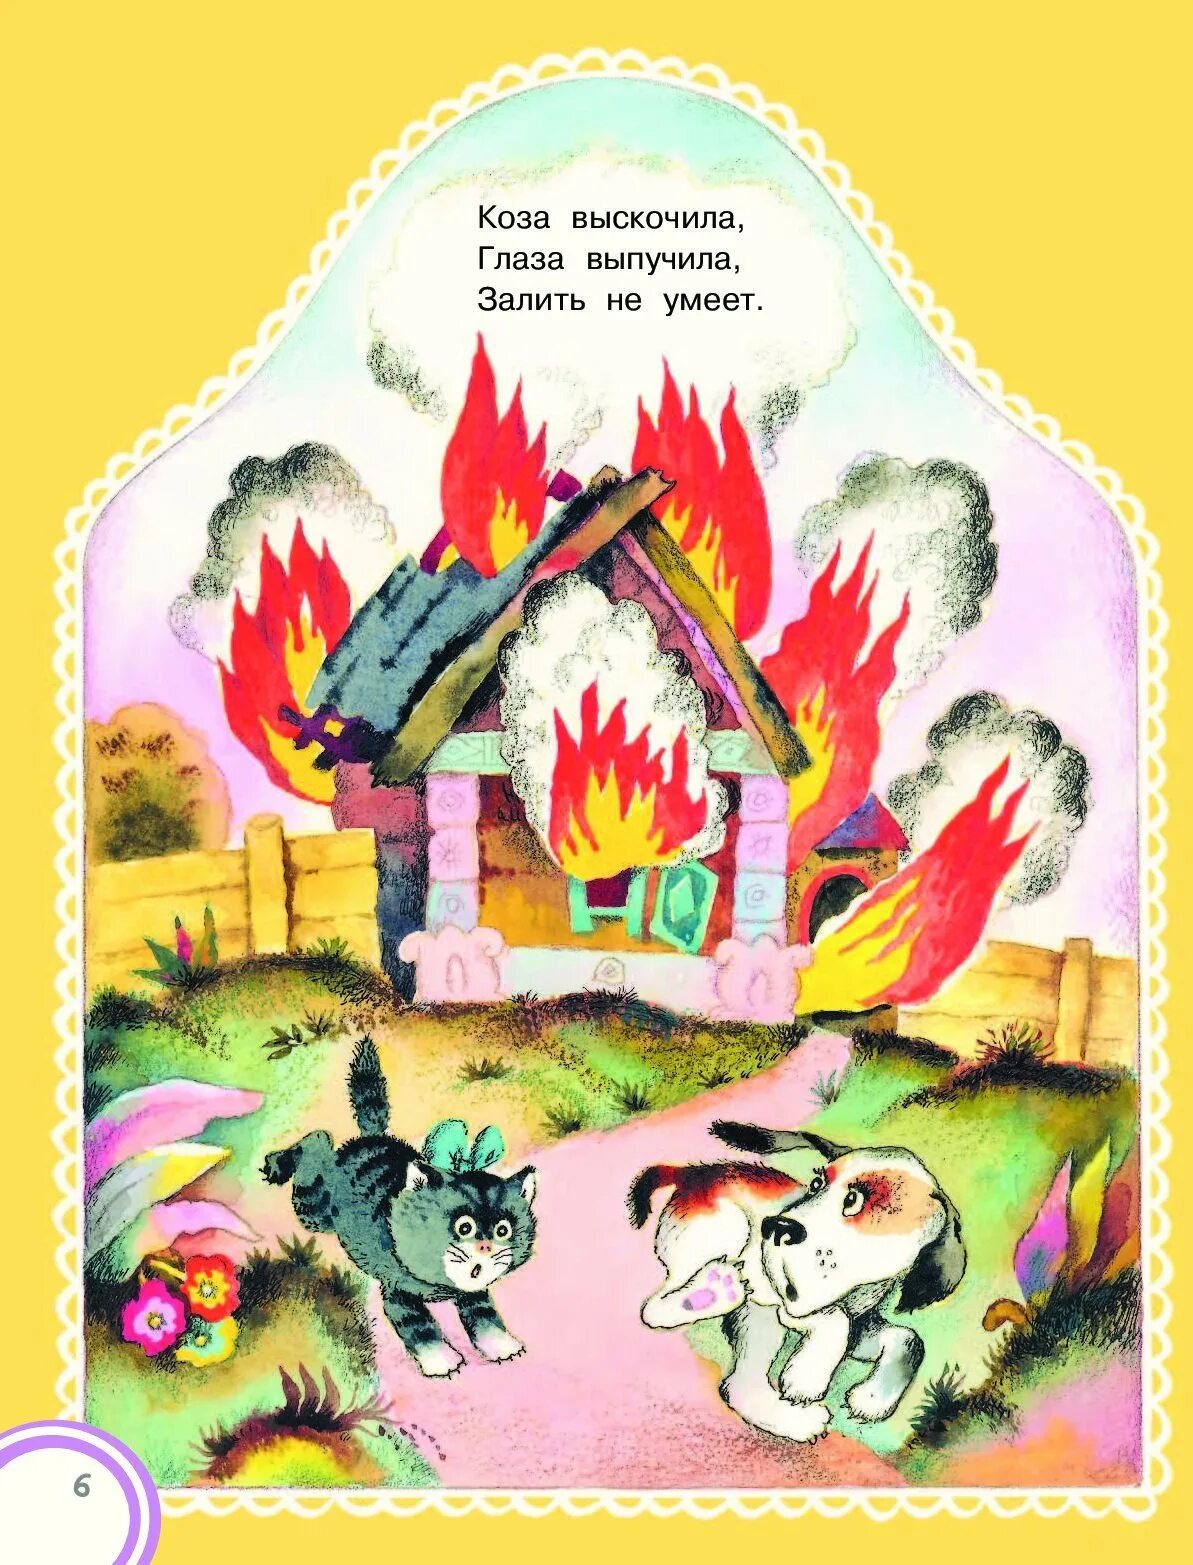 Иллюстрация к сказке кошкин дом. Кошкин дом Маршак иллюстрации пожар. Иллюстрации к сказке Кошкин дом Маршака. Иллюстрации к тили-тили-тили-Бом загорелся Кошкин дом. Загорелся Кошкин дом иллюстрации.